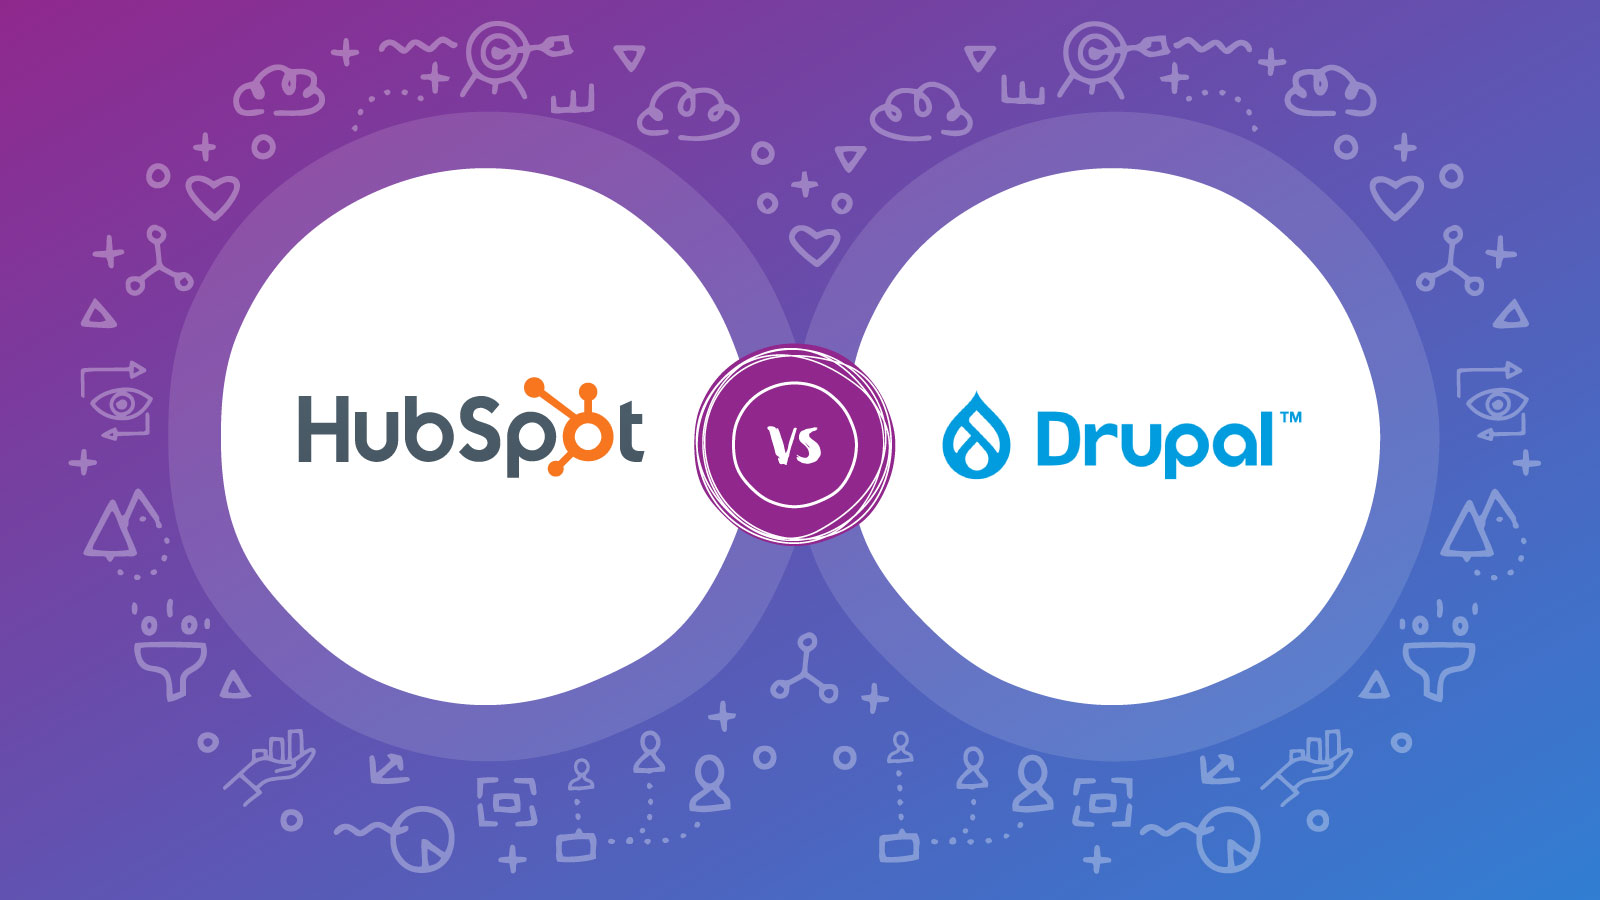 HubSpot vs Drupal